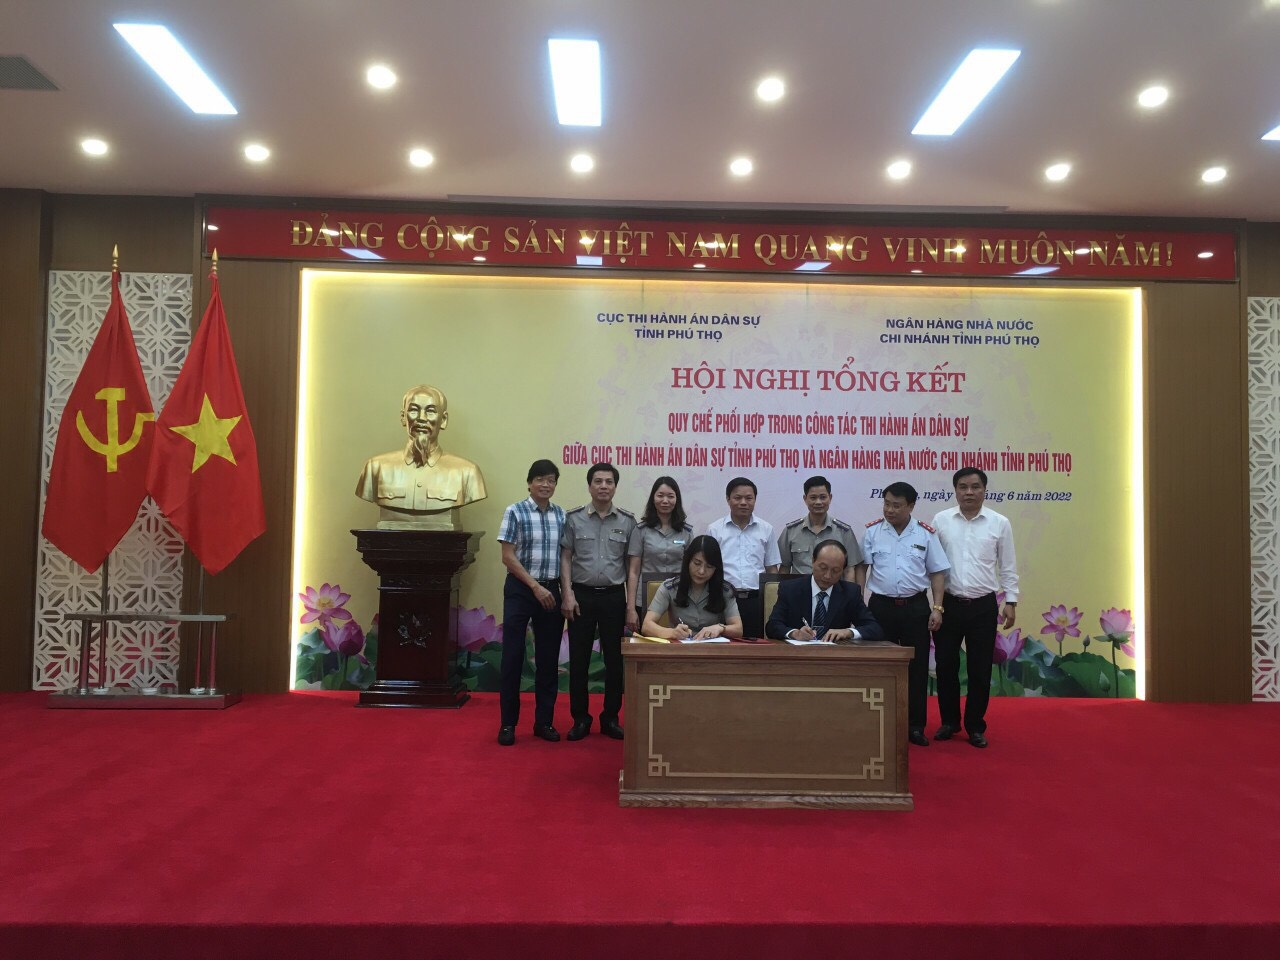 Cục Thi hành án dân sự tỉnh Phú Thọ và Ngân hàng nhà nước chi nhánh tỉnh Phú Thọ tổ chức Hội nghị tổng kết Quy chế phối hợp